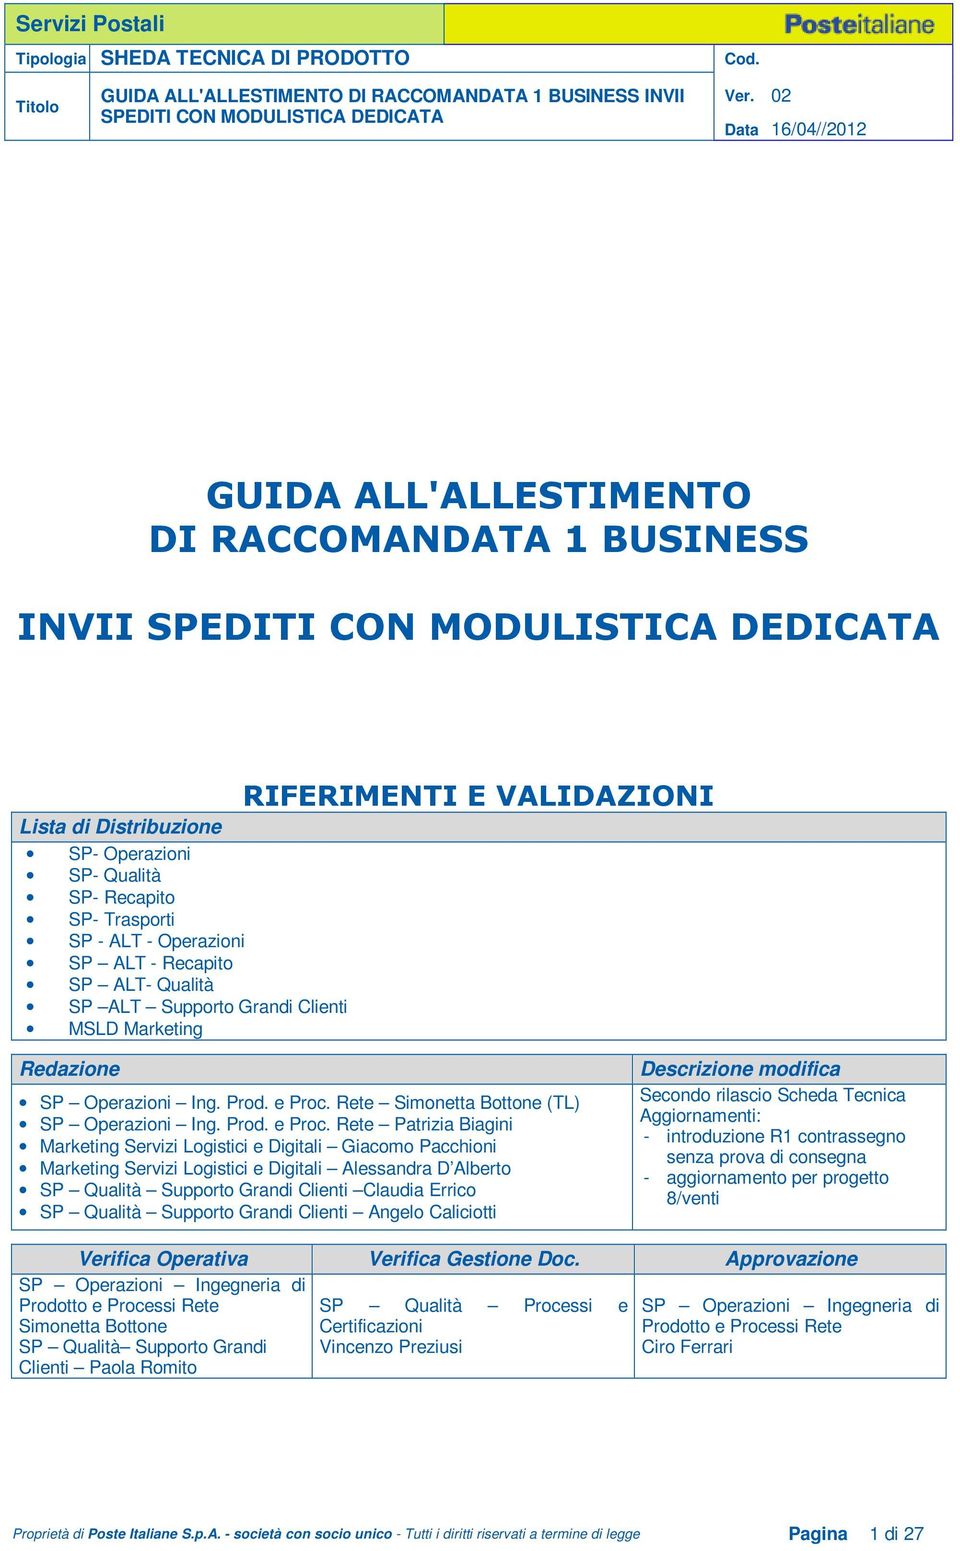 Rete Simonetta Bottone (TL) SP Operazioni Ing. Prod. e Proc.